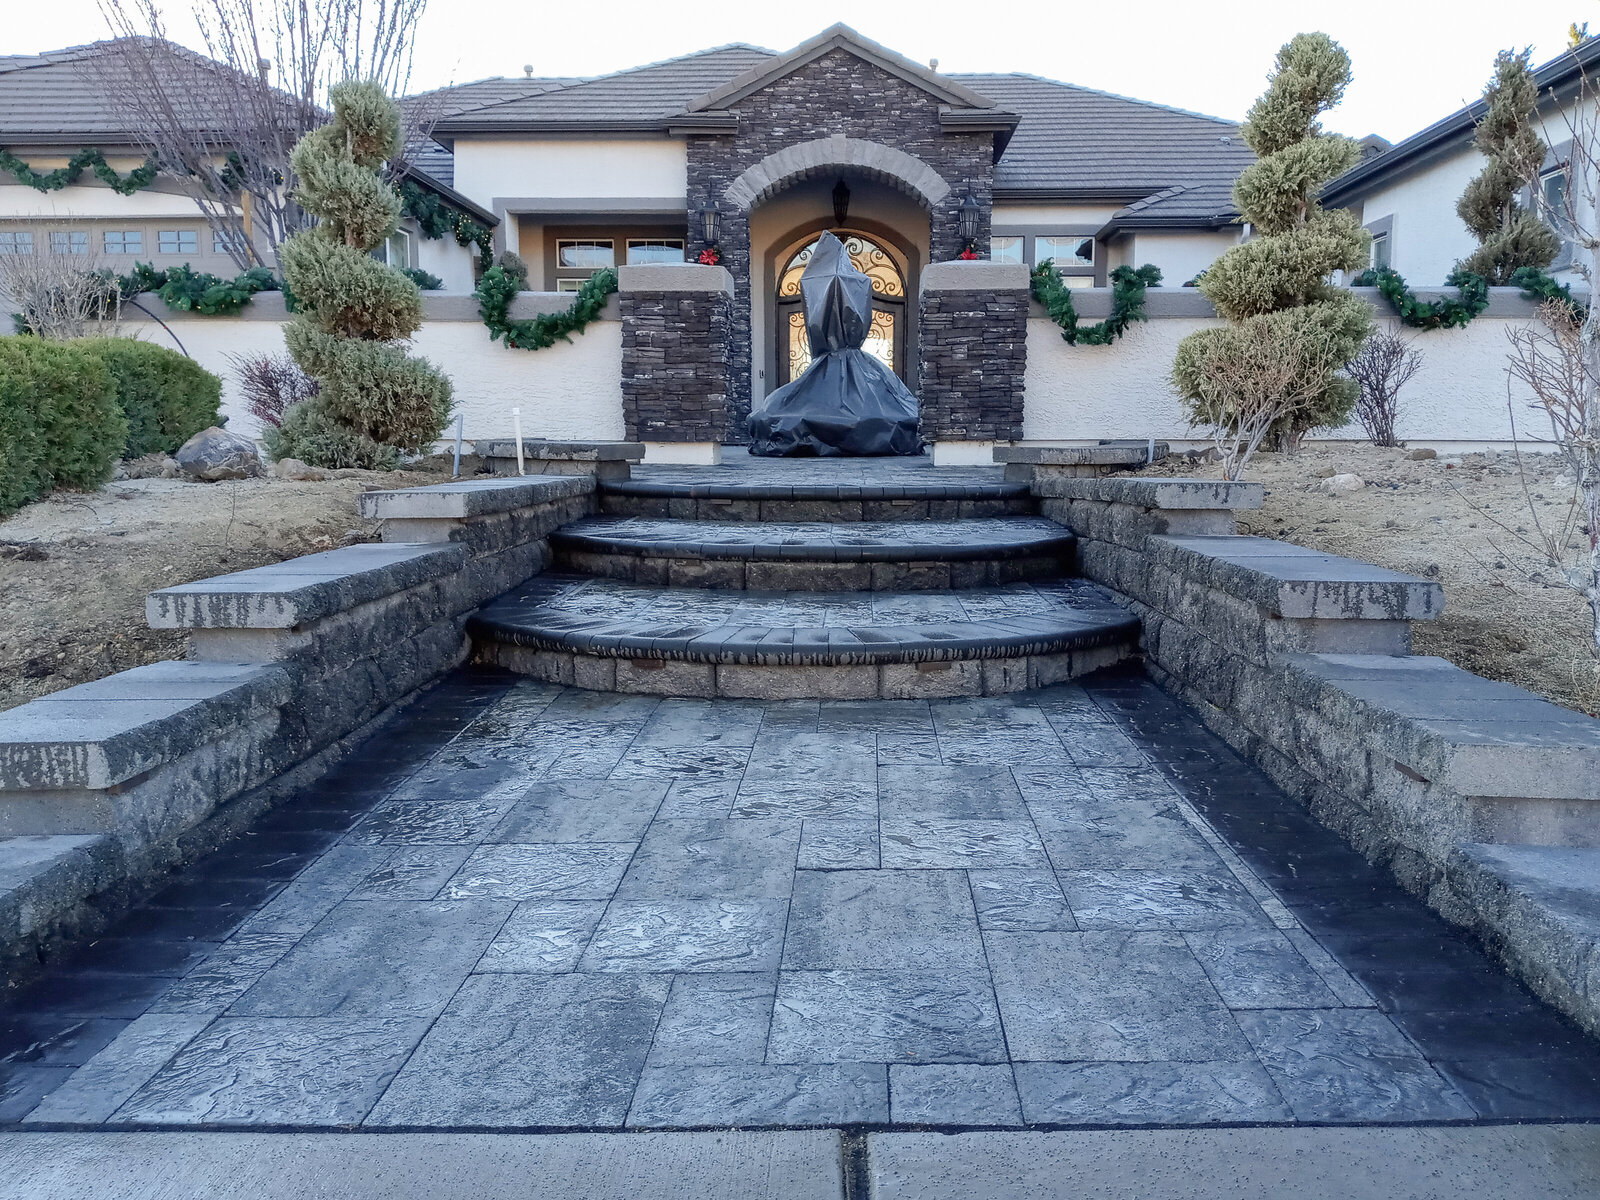 Reno NV landscaping and masonry services